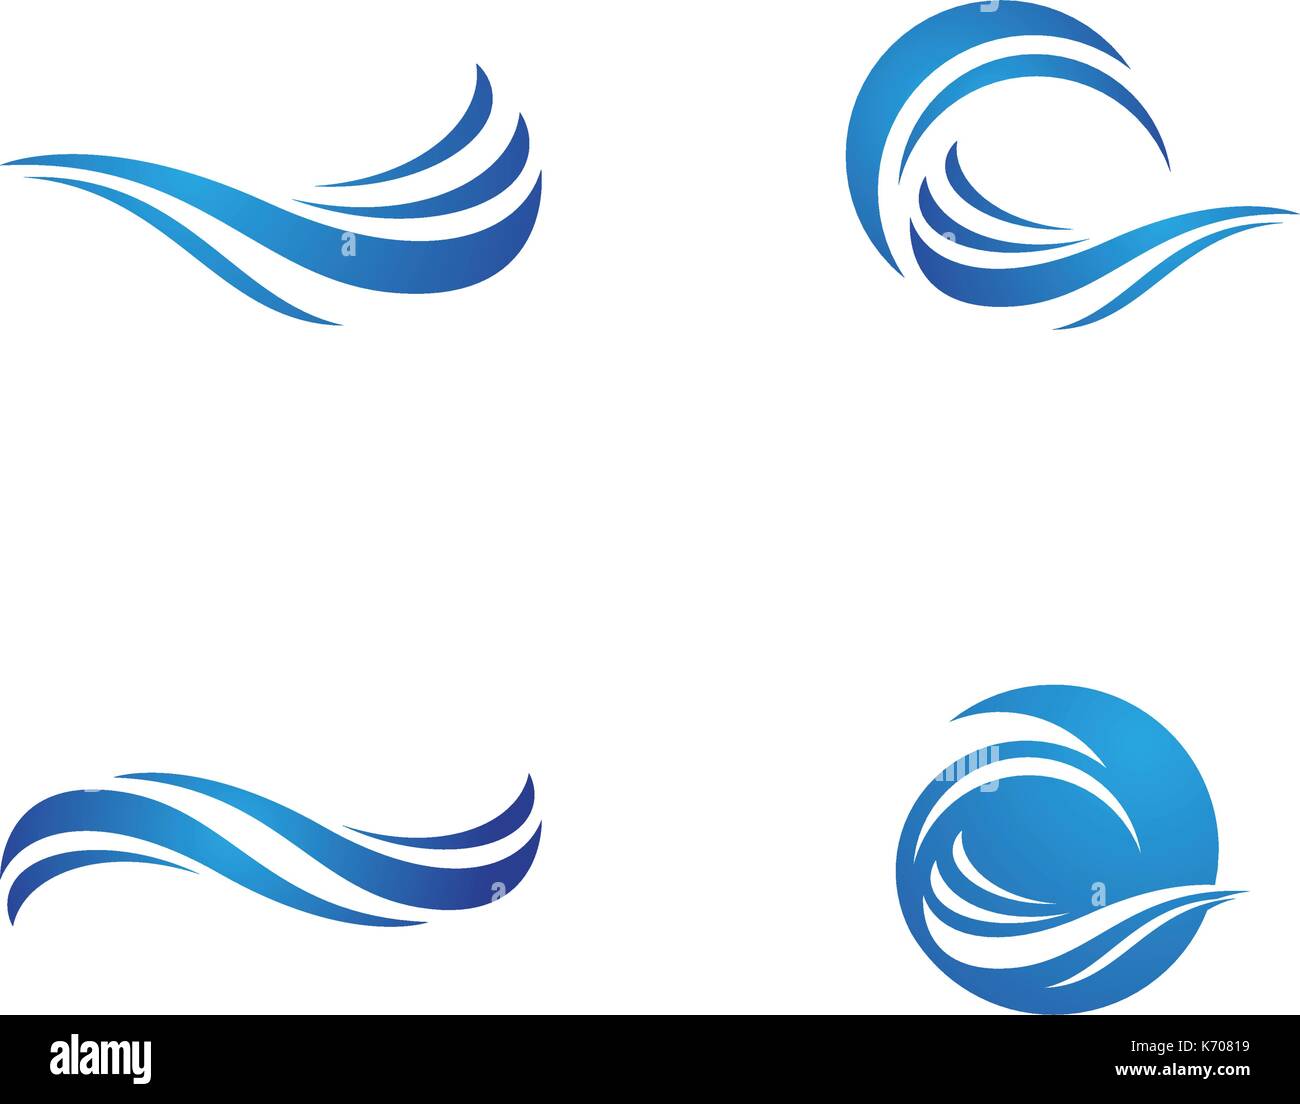 Wasser Welle Logo Template Vector Illustration Design Stock Vektor